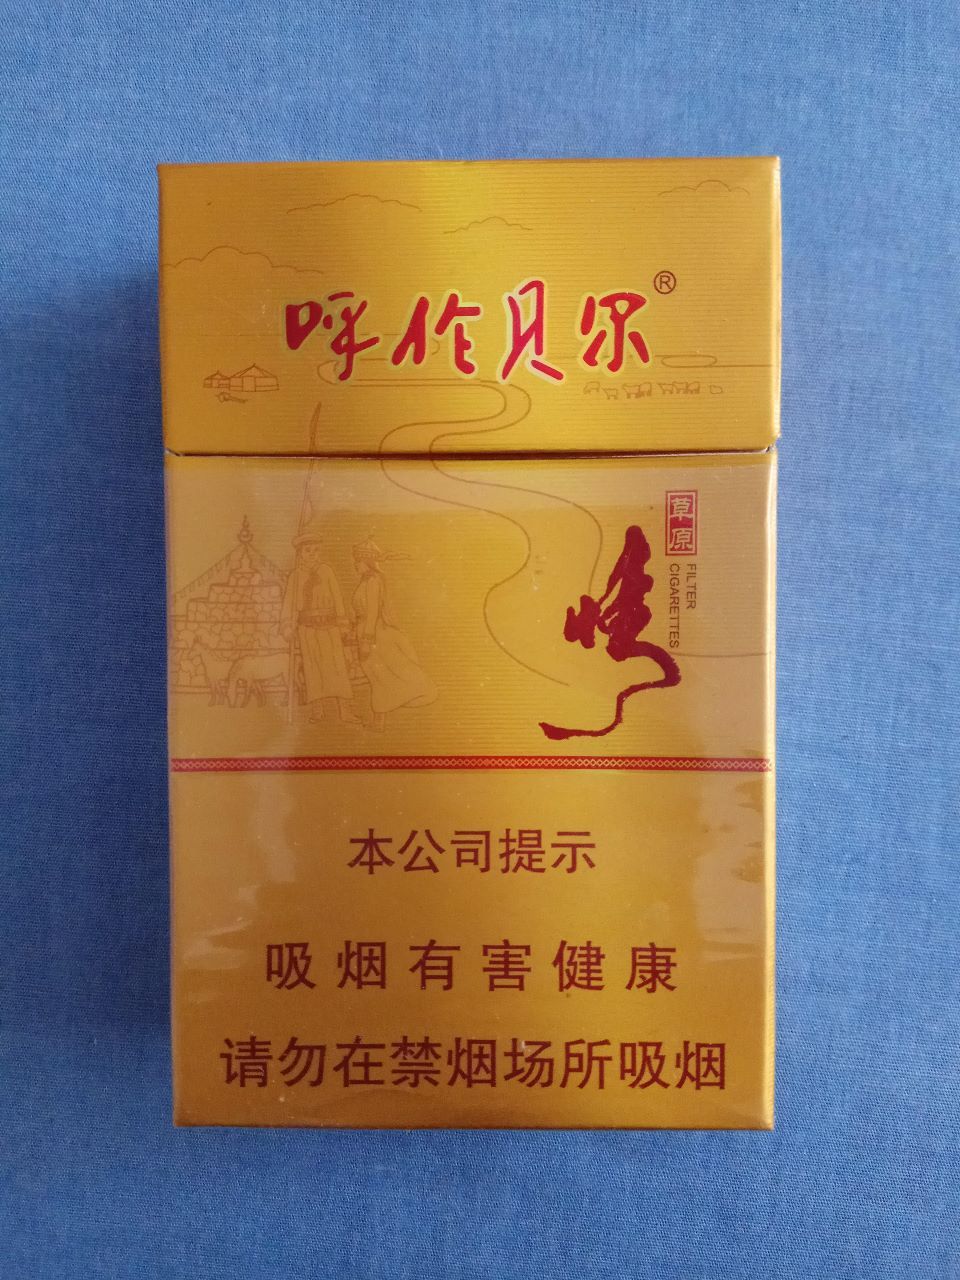 内蒙古香烟品牌布察图片